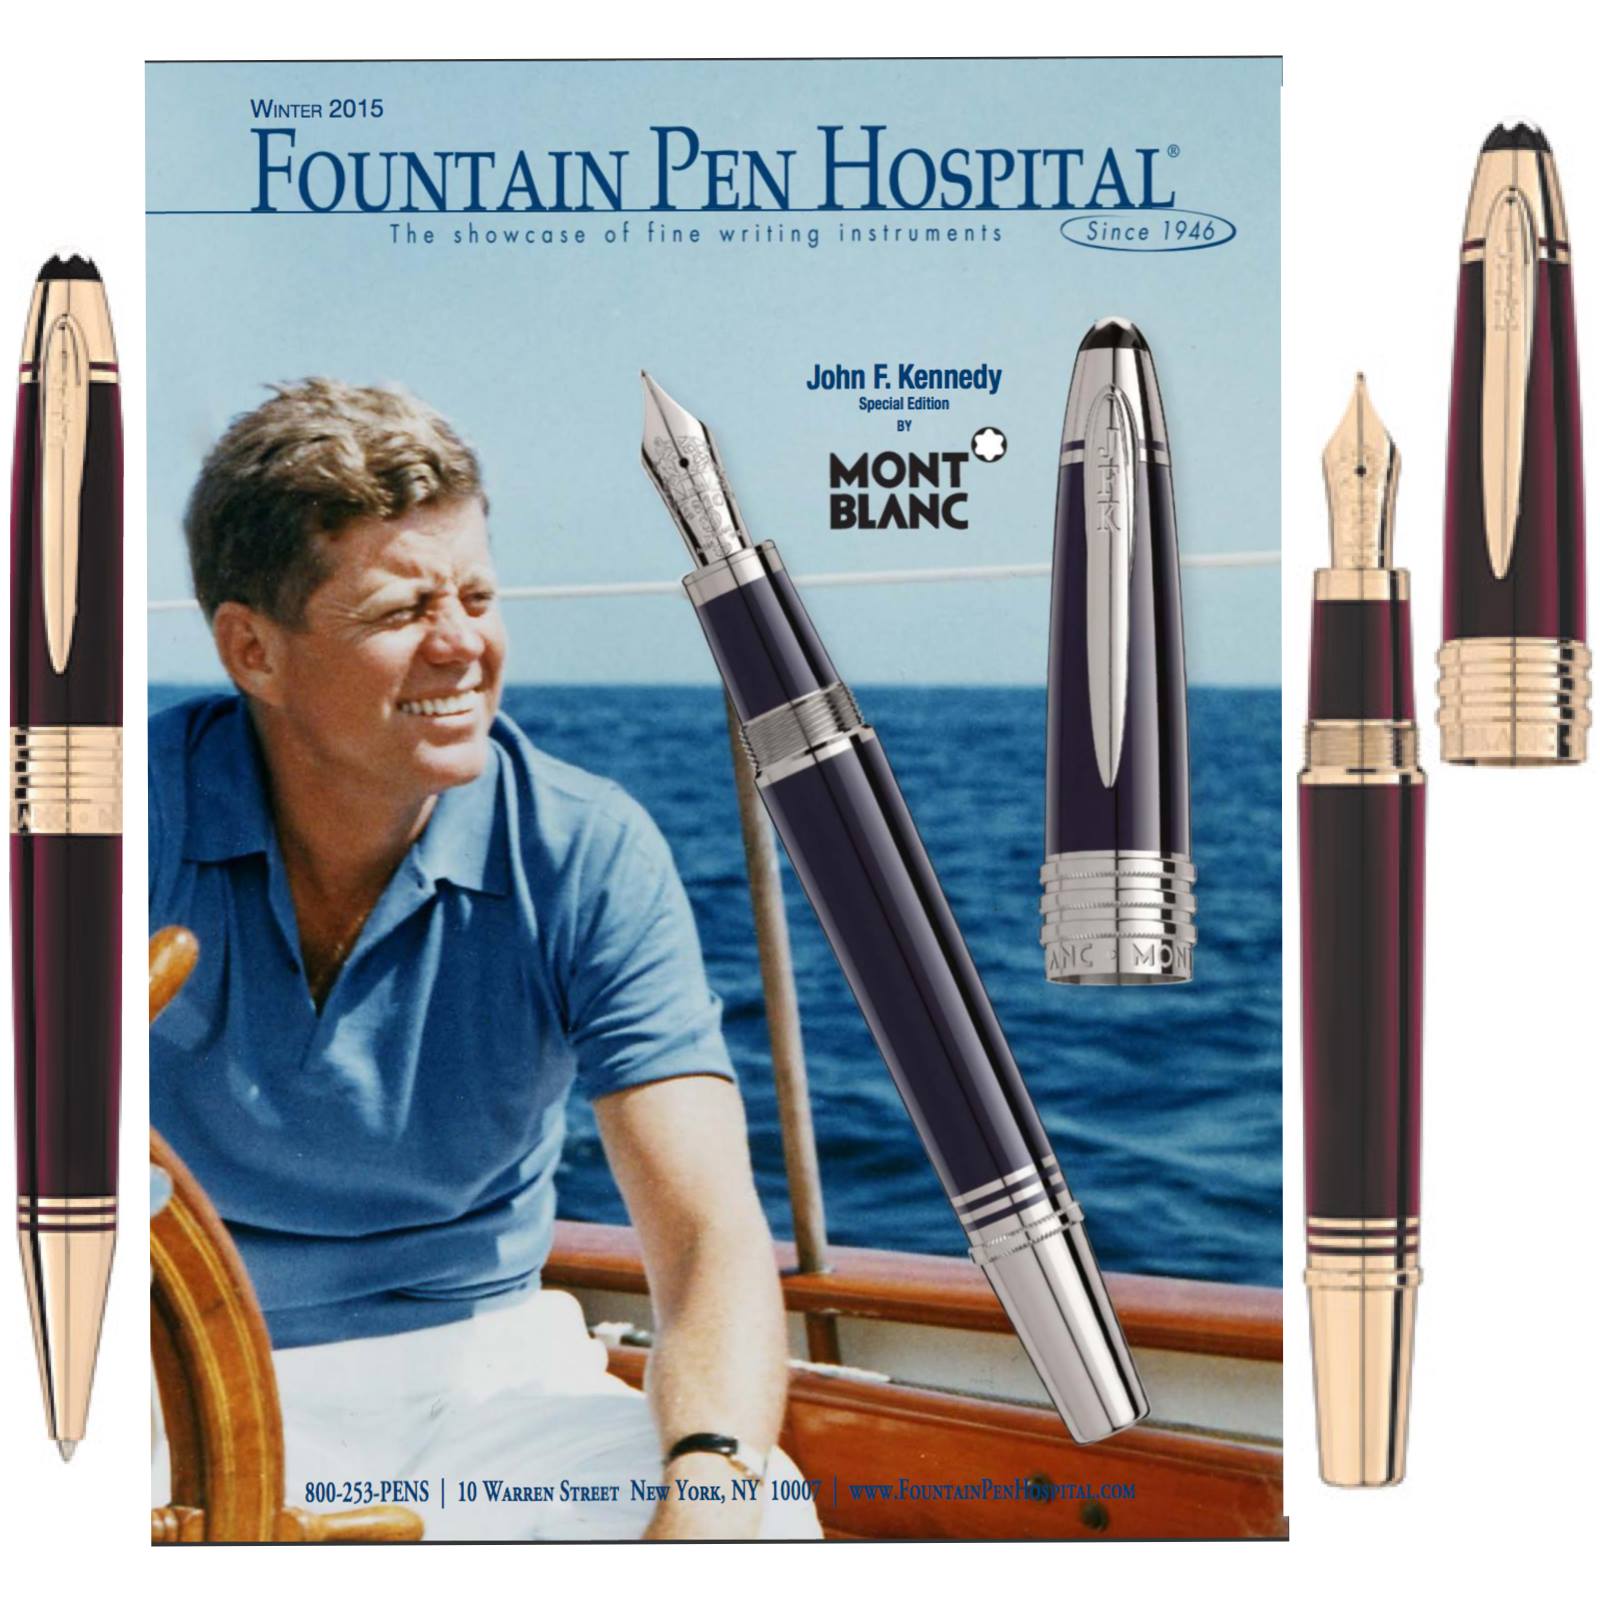 JFK pens